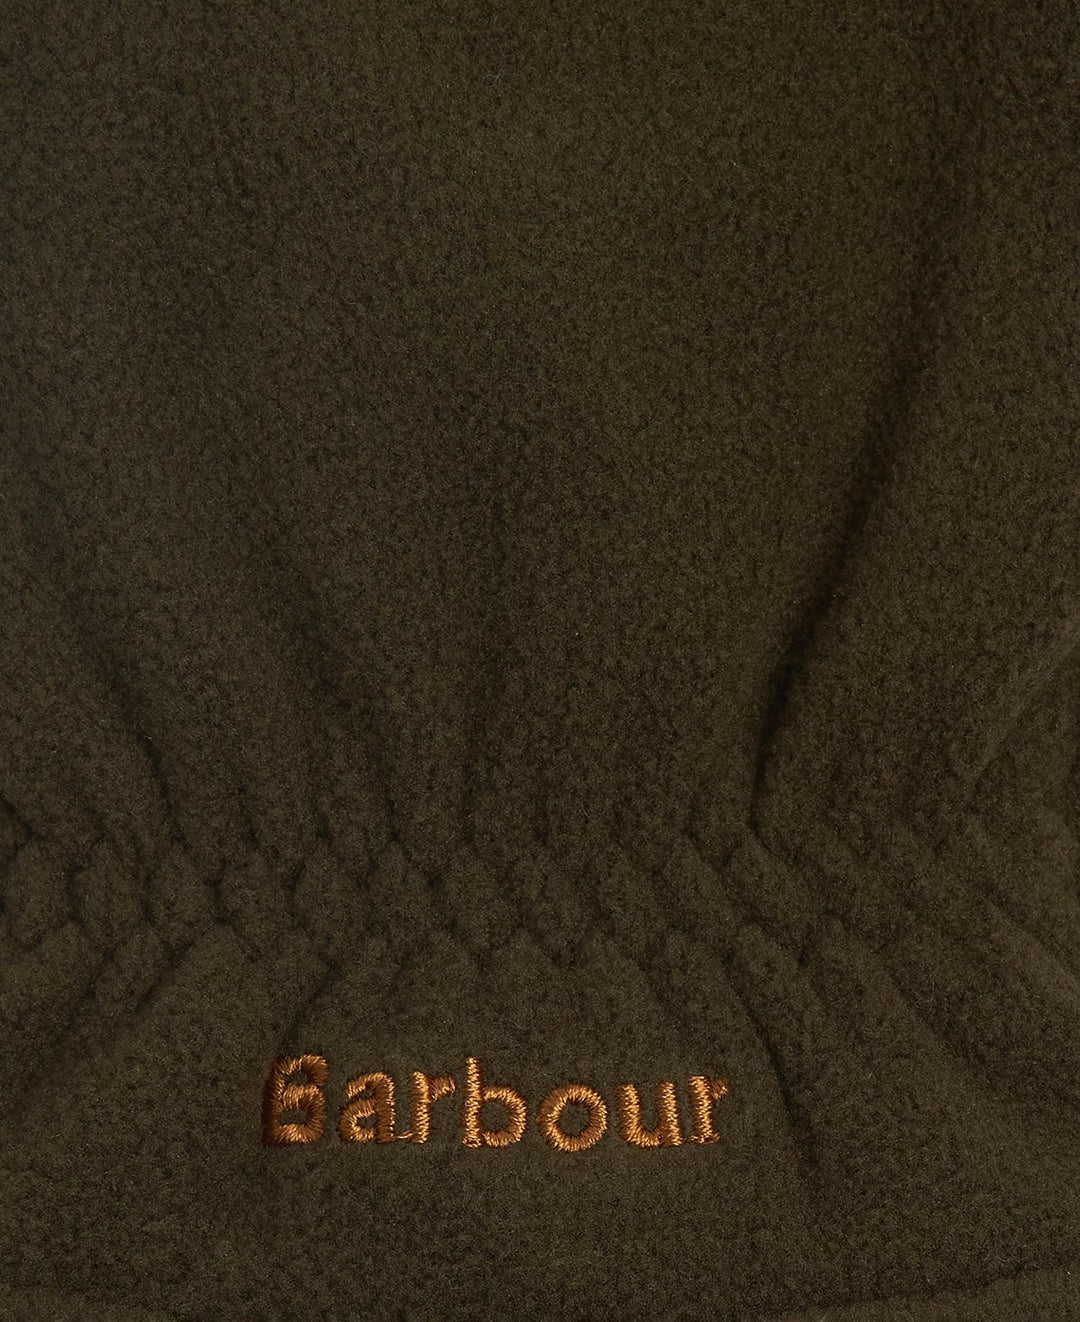 Barbour Coalford Fleece Gloves